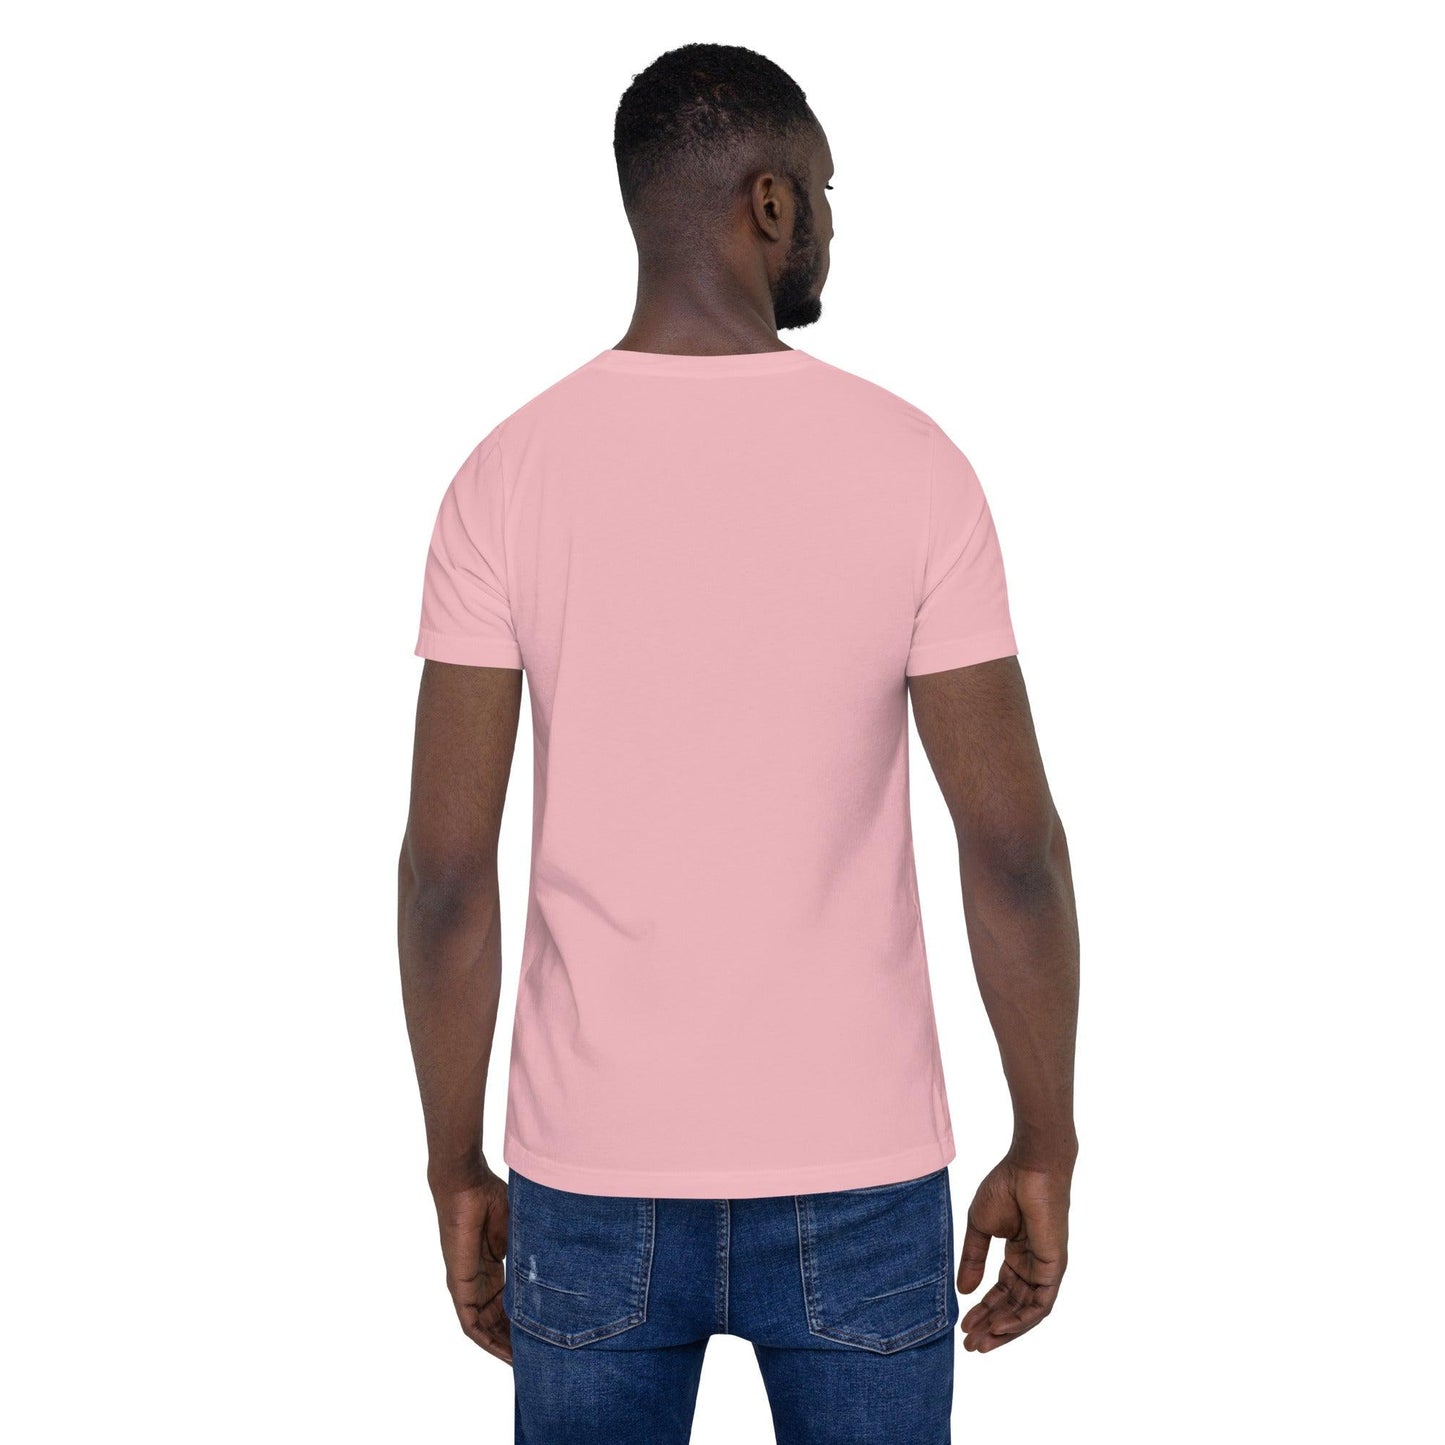 "URise Together" T-Shirt - Pink - URiseTogetherApparel